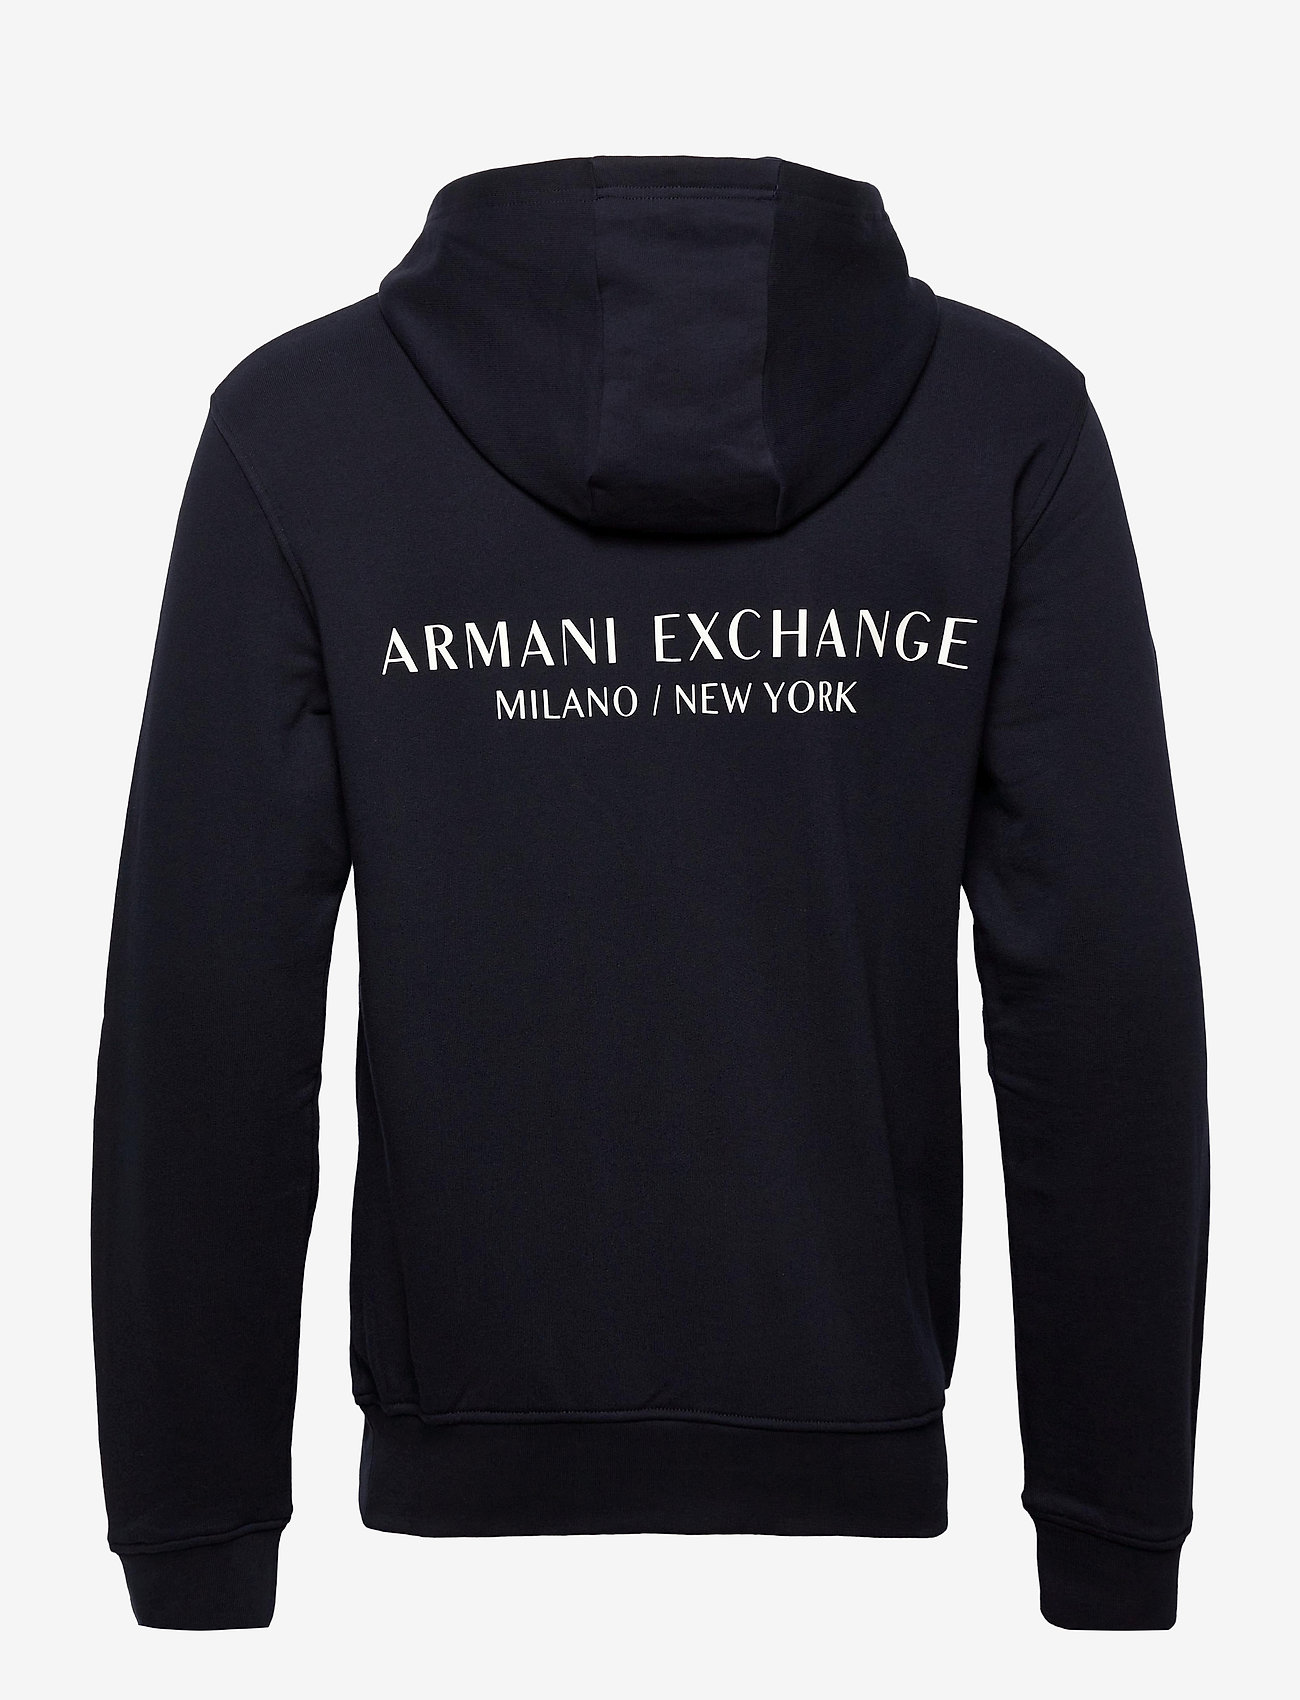 Armani Exchange - SWEATSHIRTS - hoodies - navy - 1